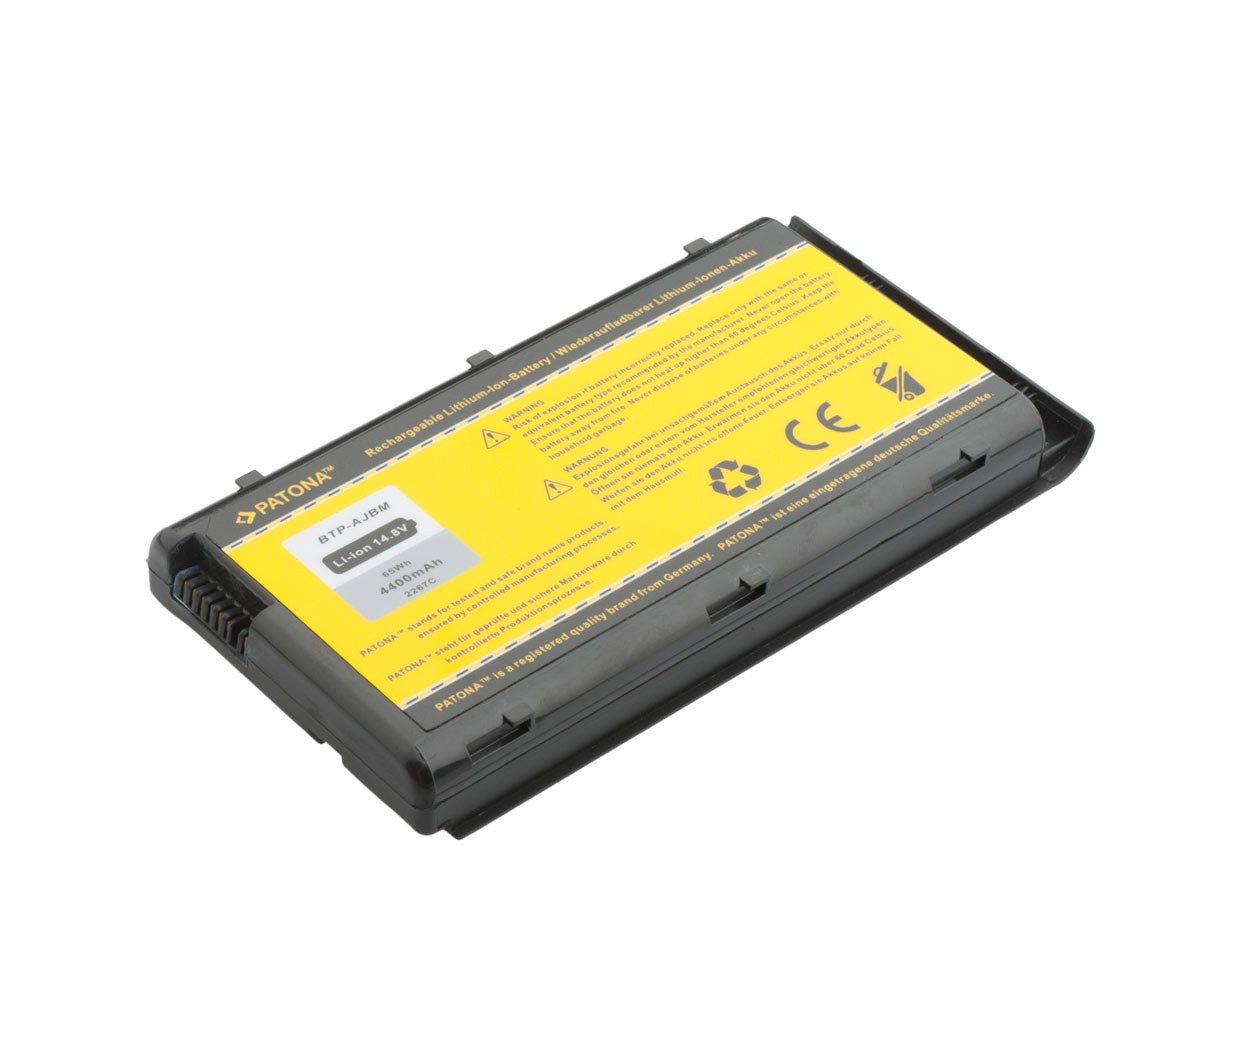 Baterija za Medion MD96500, MD97500, MD97600, WIM2040